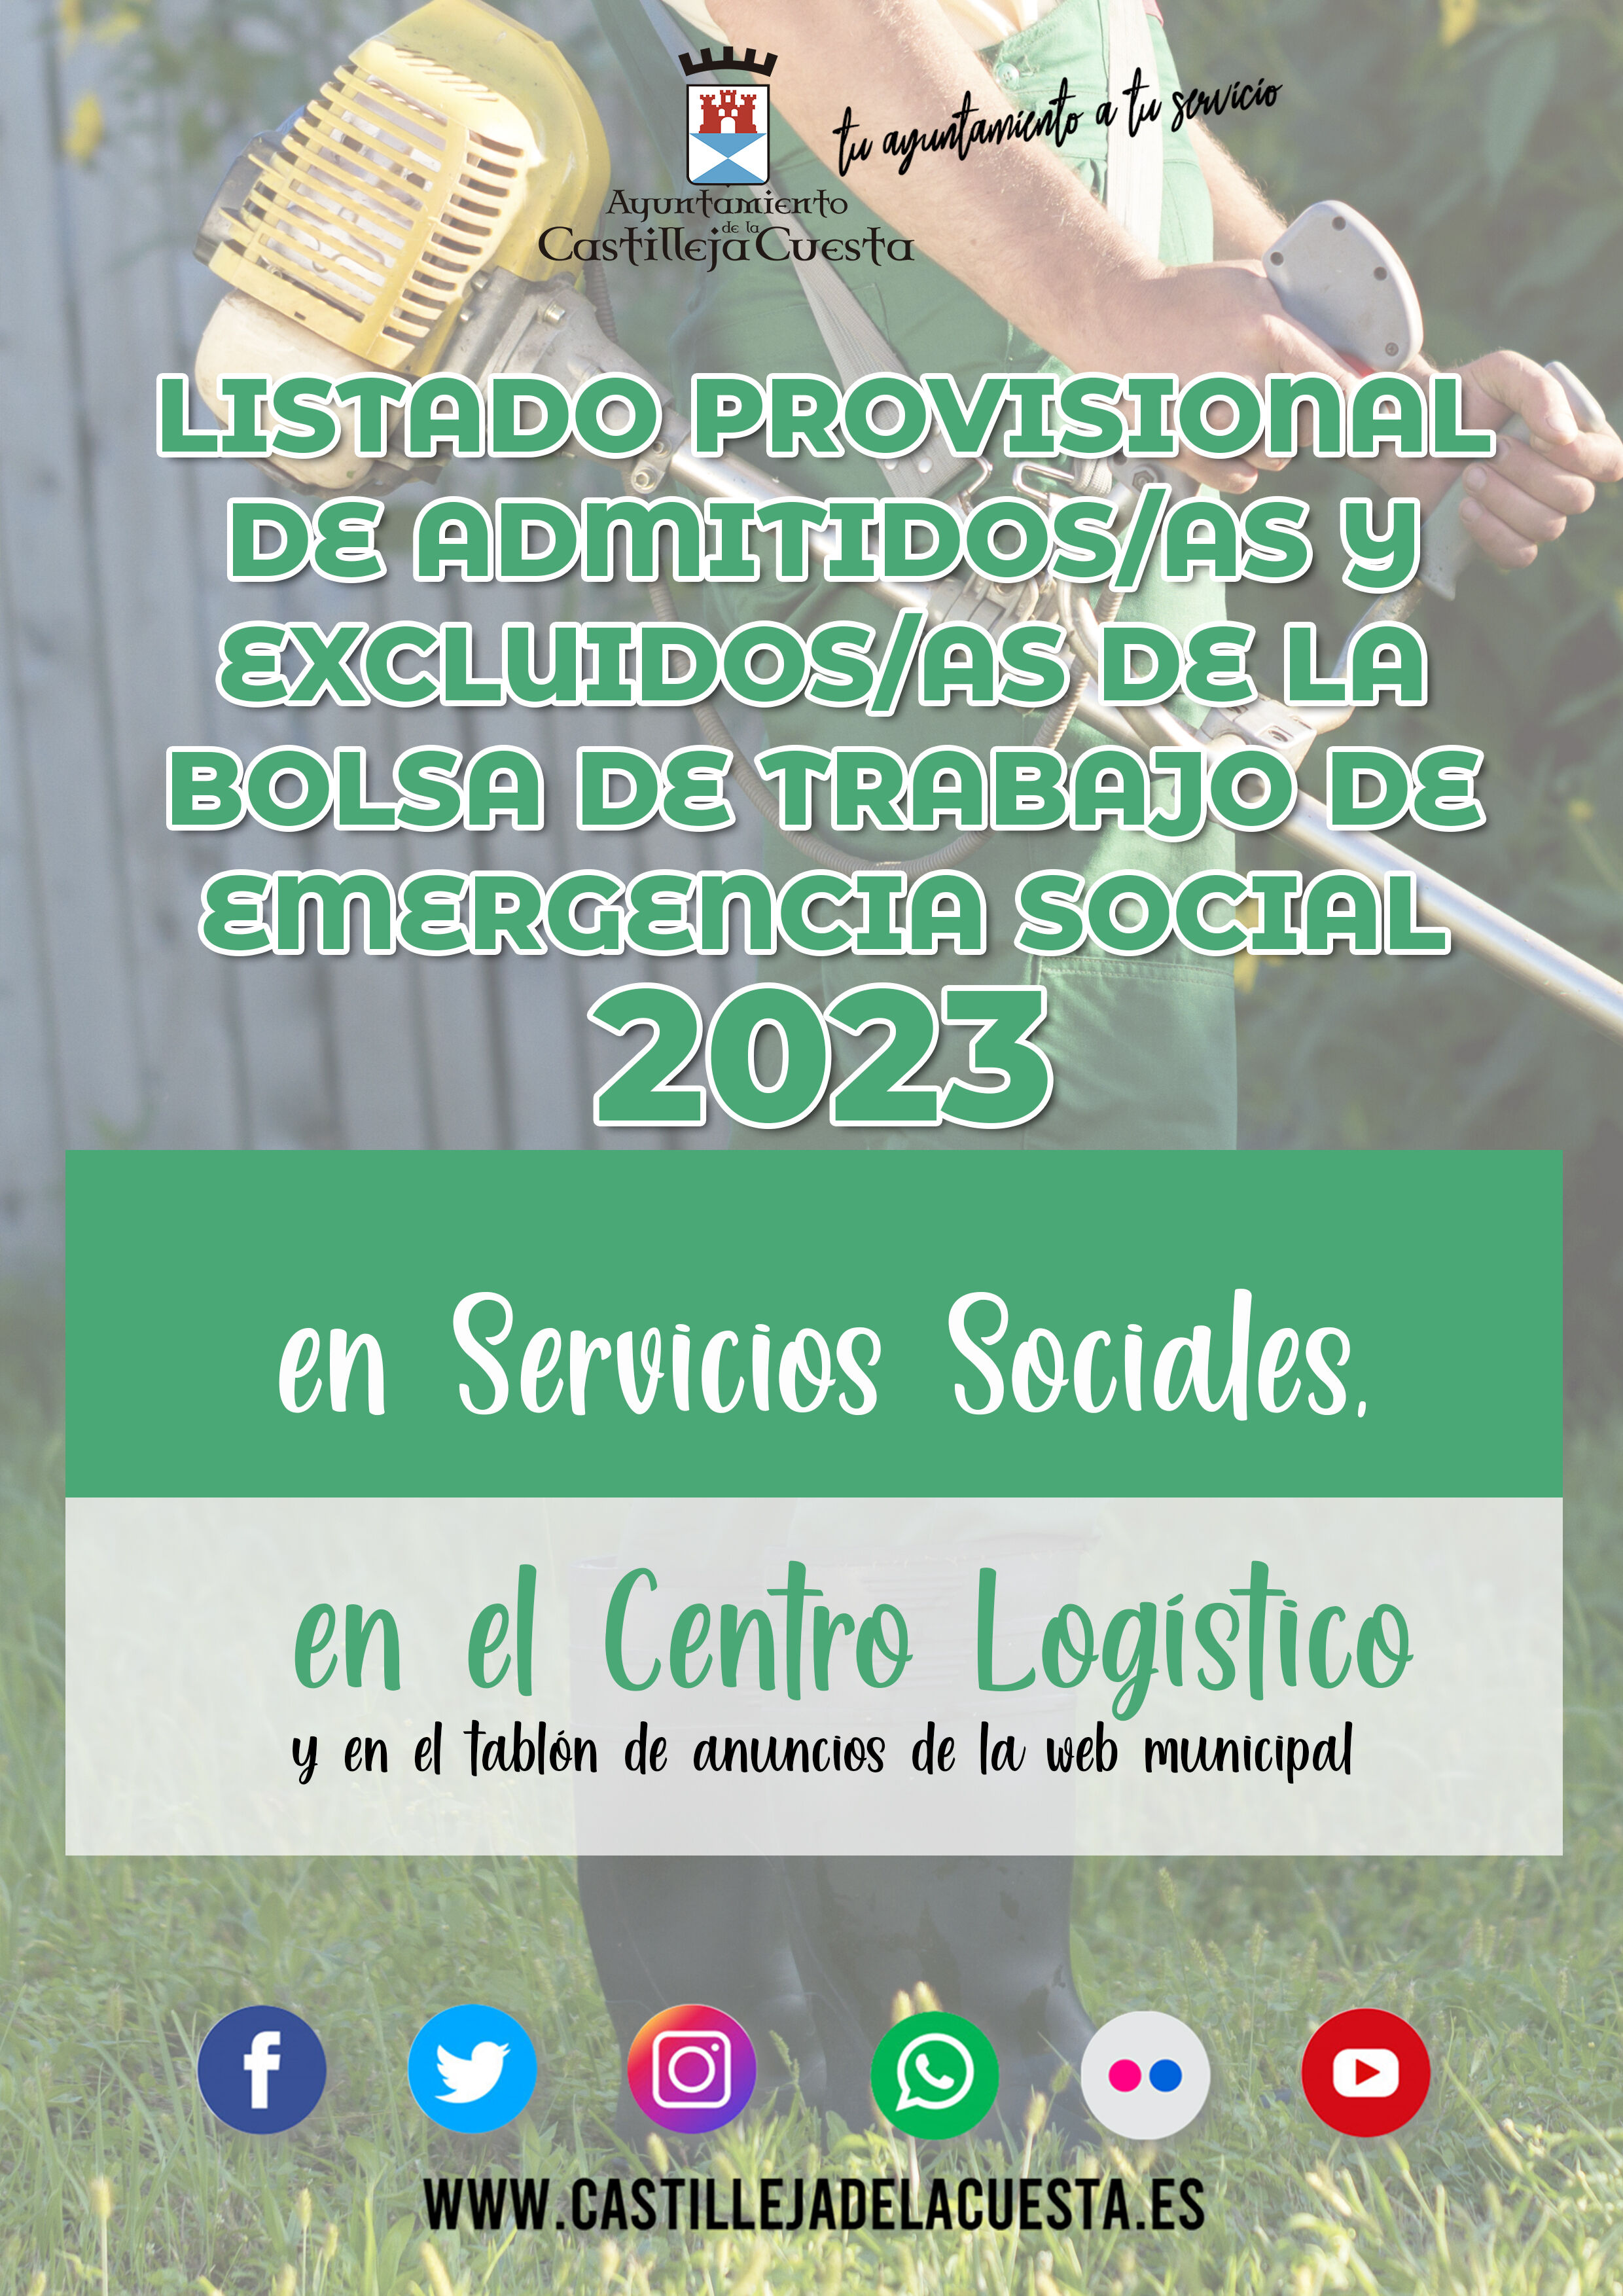 LISTADO PROVISIONAL EMERGENCIA SOCIAL 2023